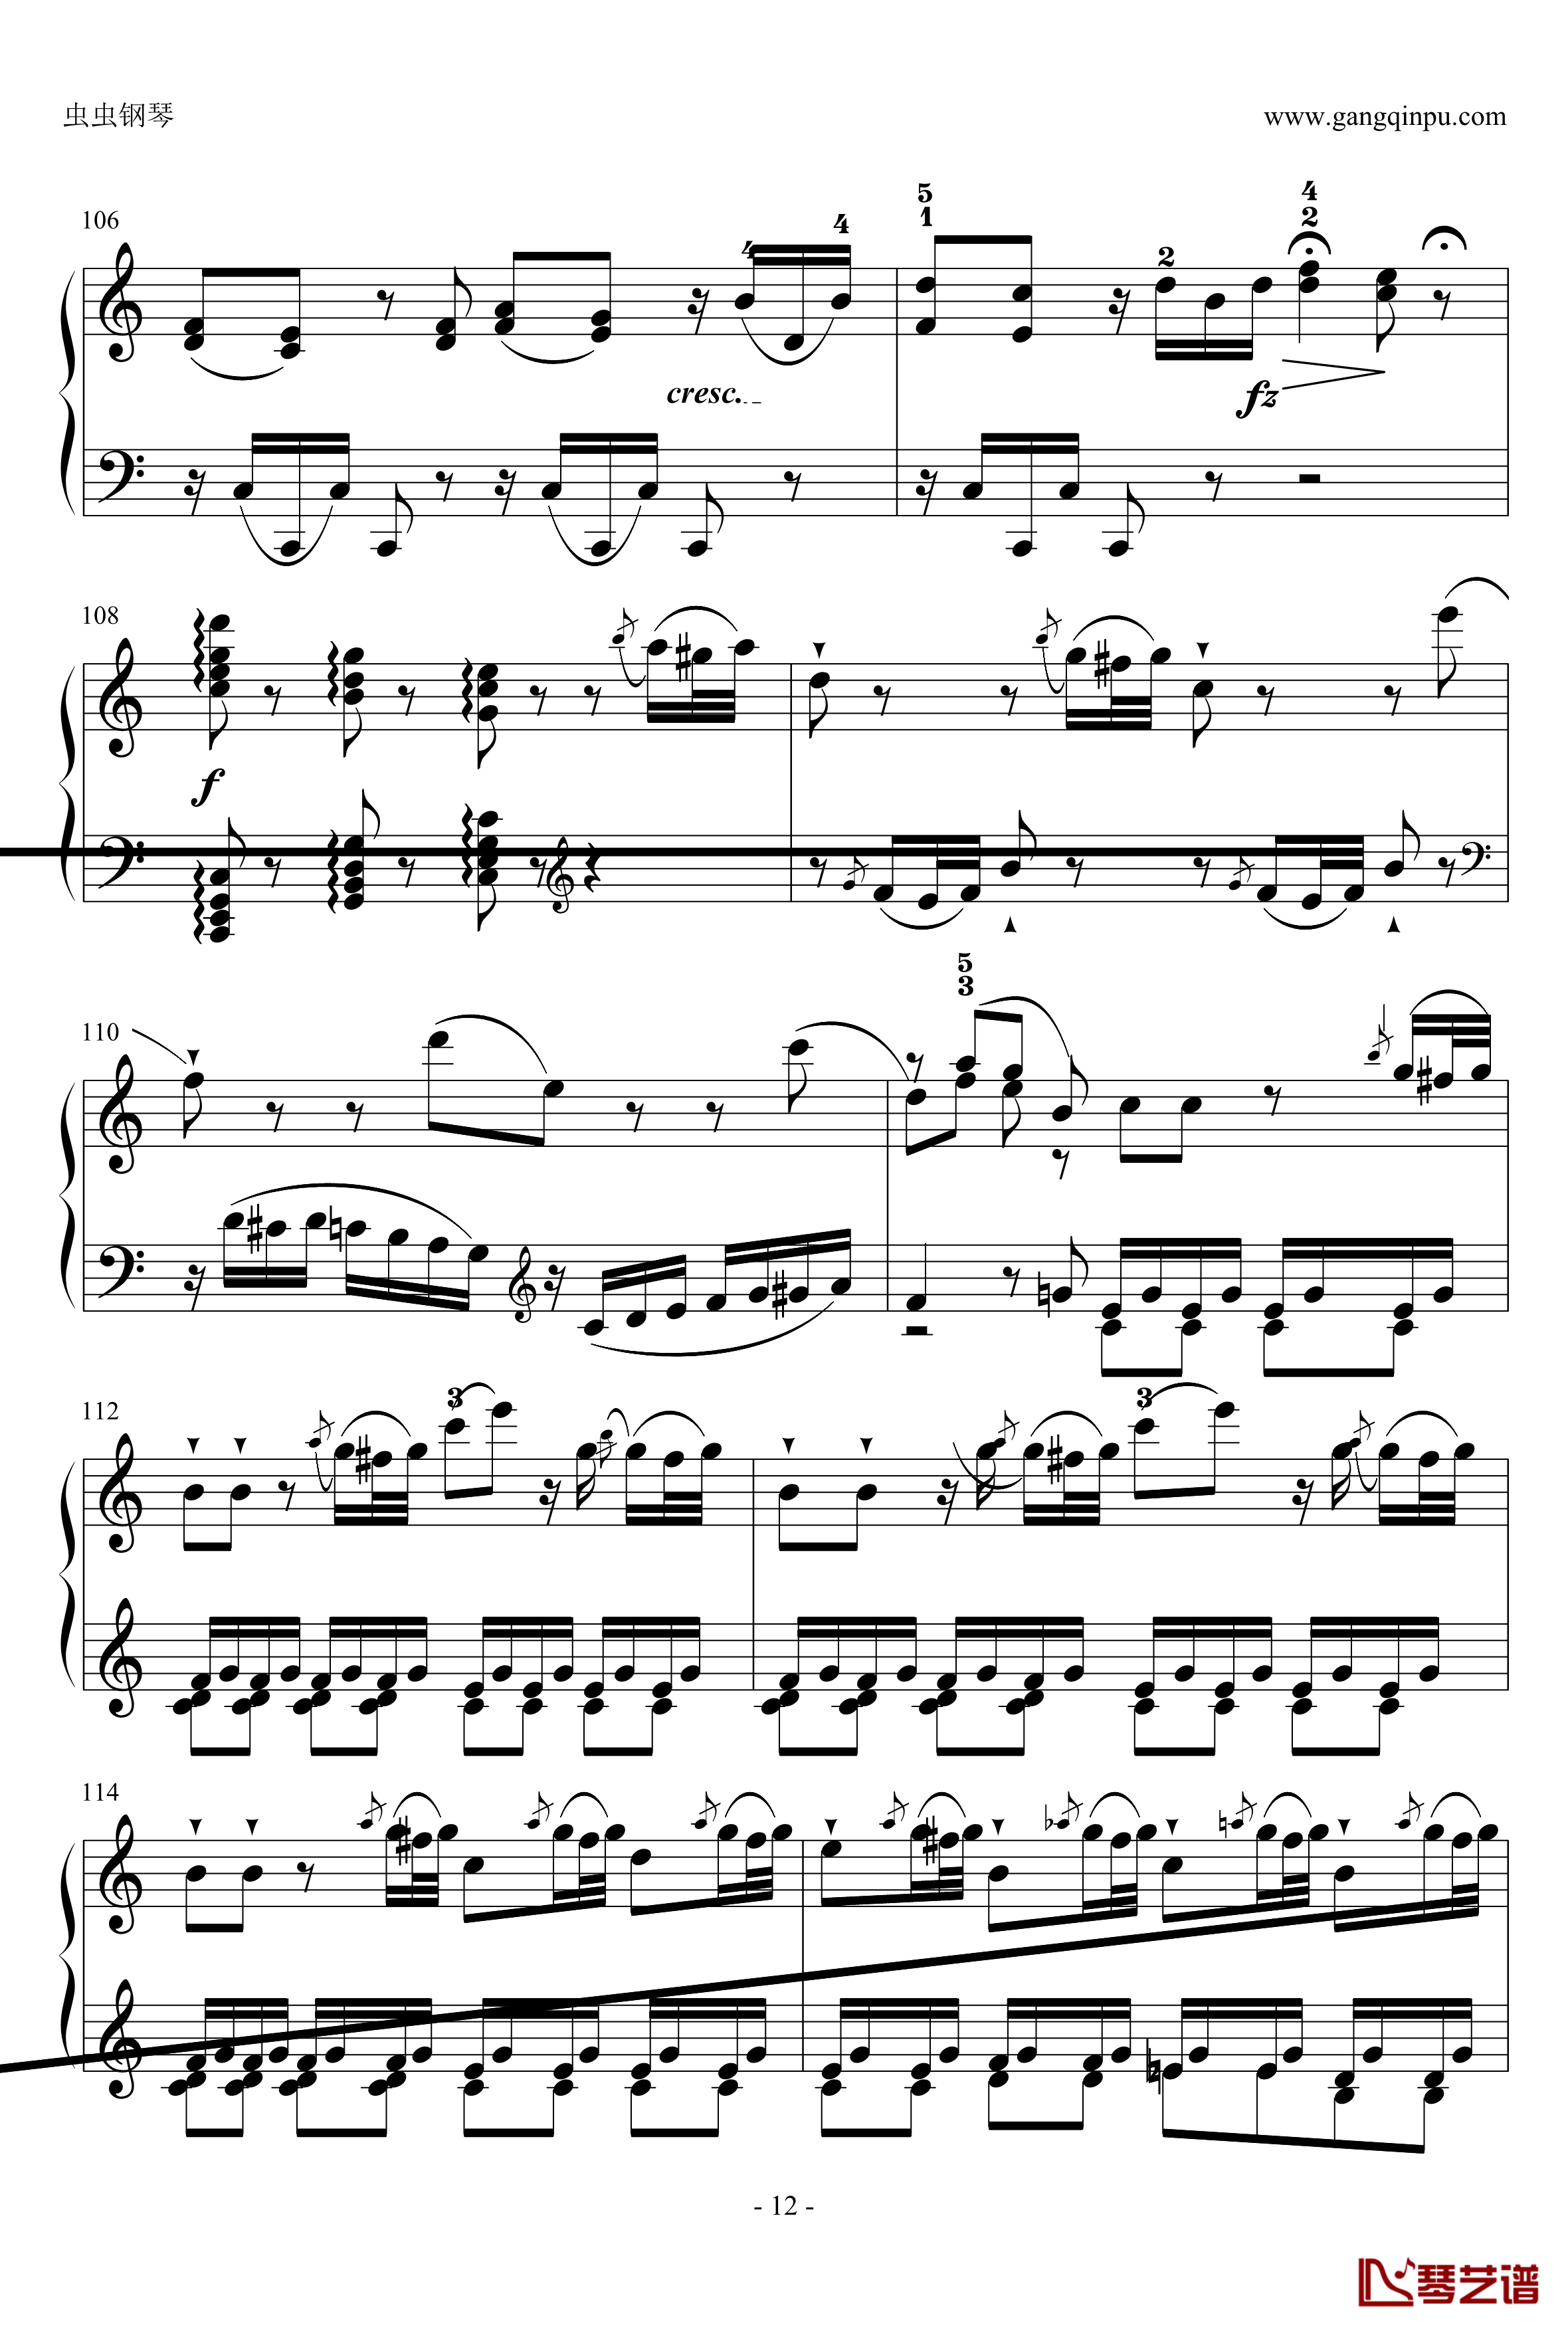 C大调奏鸣曲钢琴谱第一乐章-海顿12